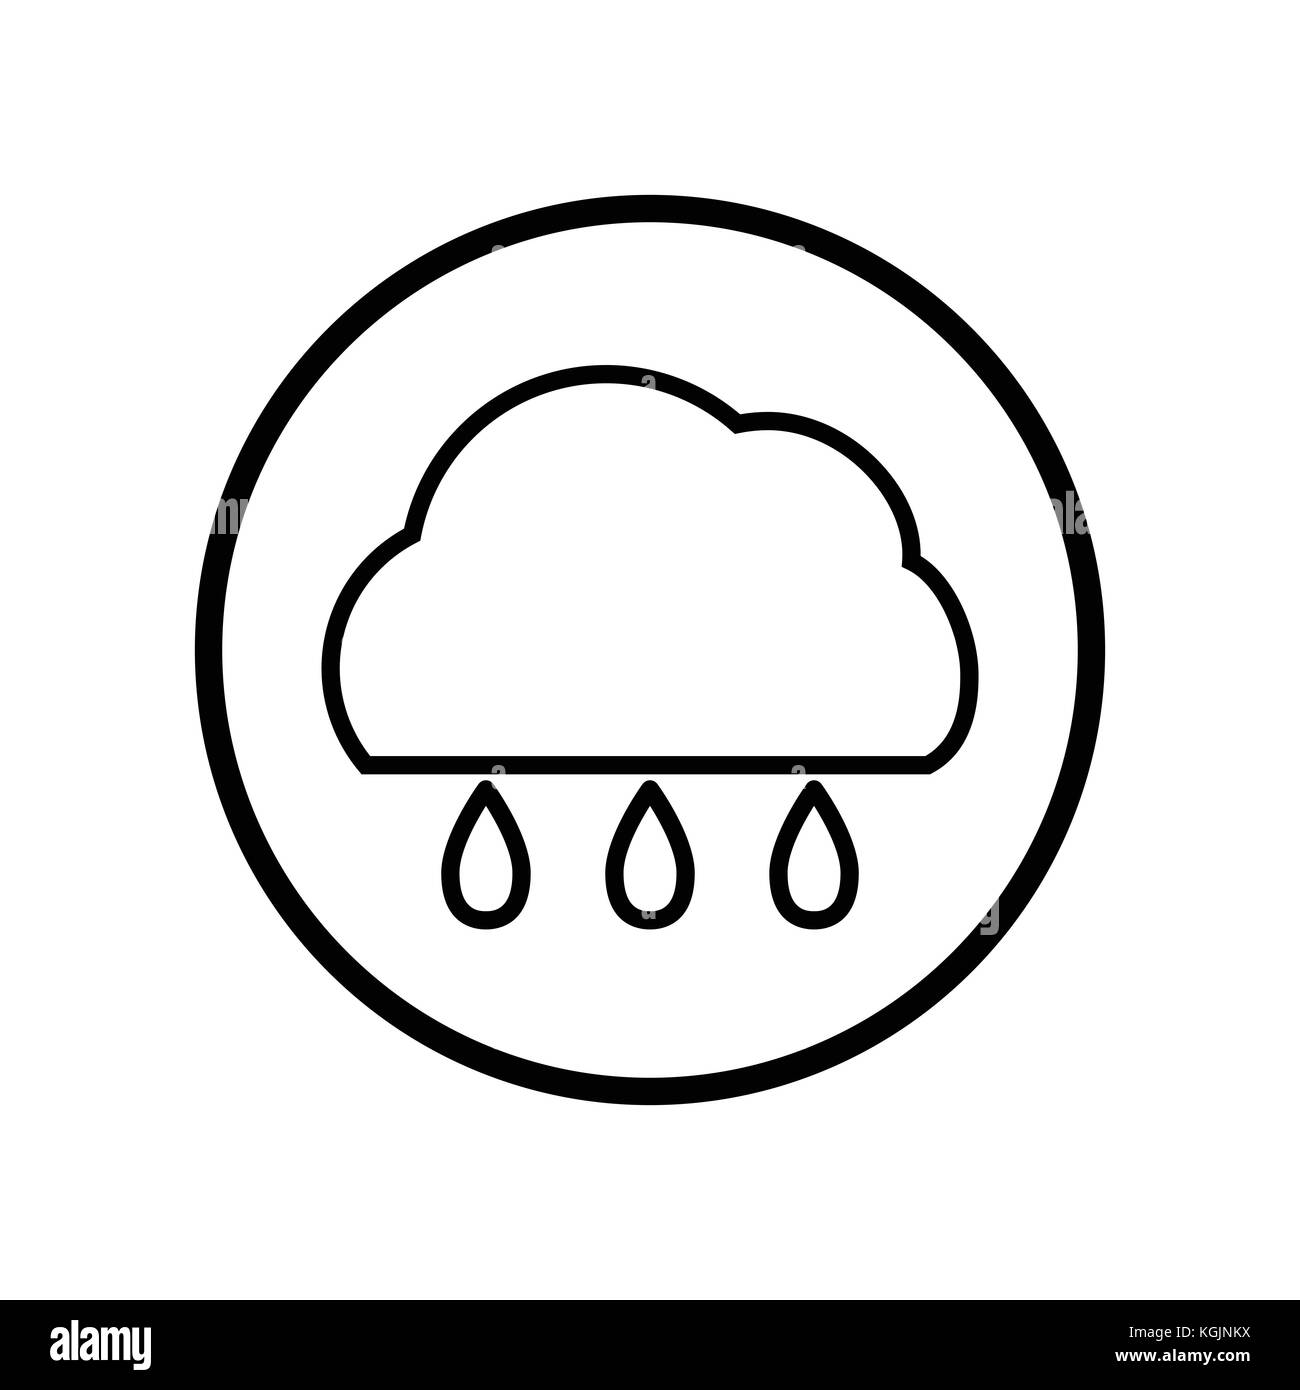 Vecteur de nuage et de la pluie dans l'icône de la ligne du cercle, symbole iconique dans un cercle, sur fond blanc, pour signer météo concept. vector design iconique. Illustration de Vecteur